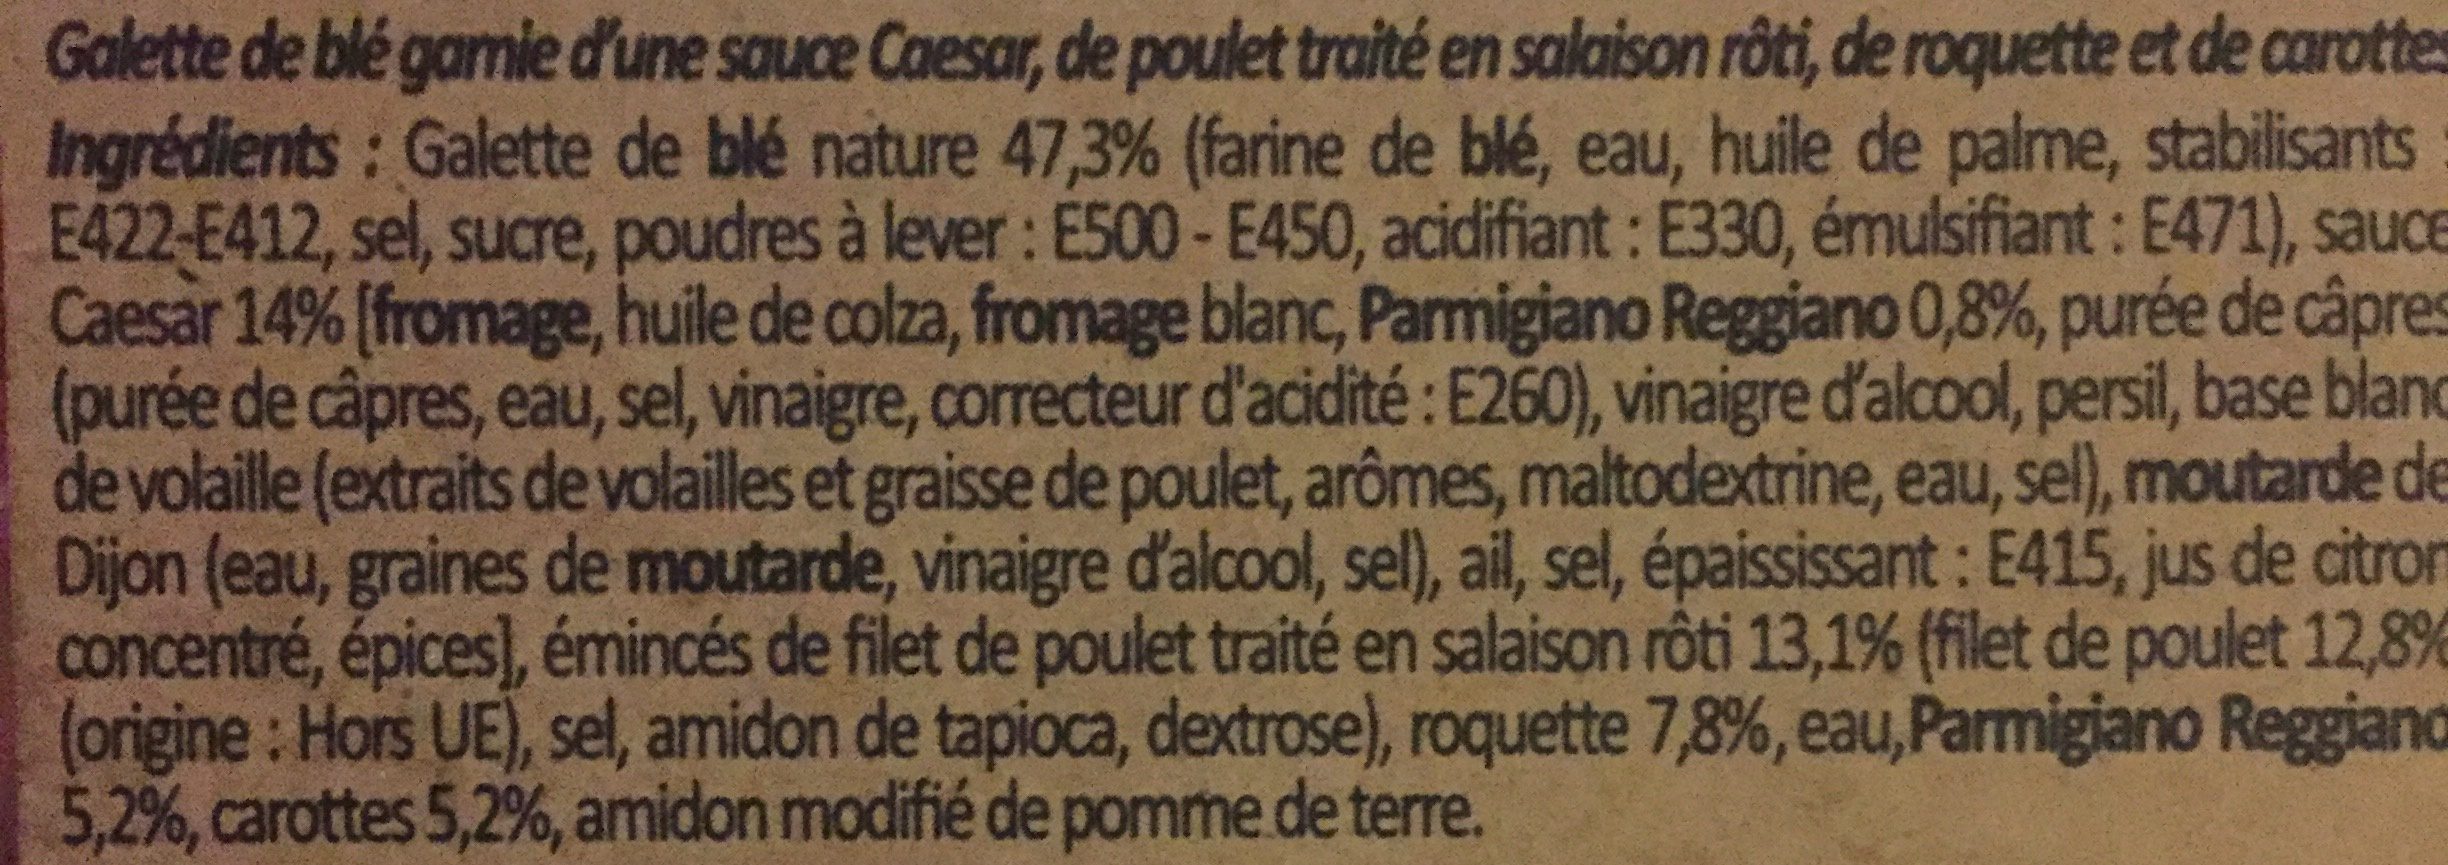 Côté Wrap Poulet Caesar - Ingrédients